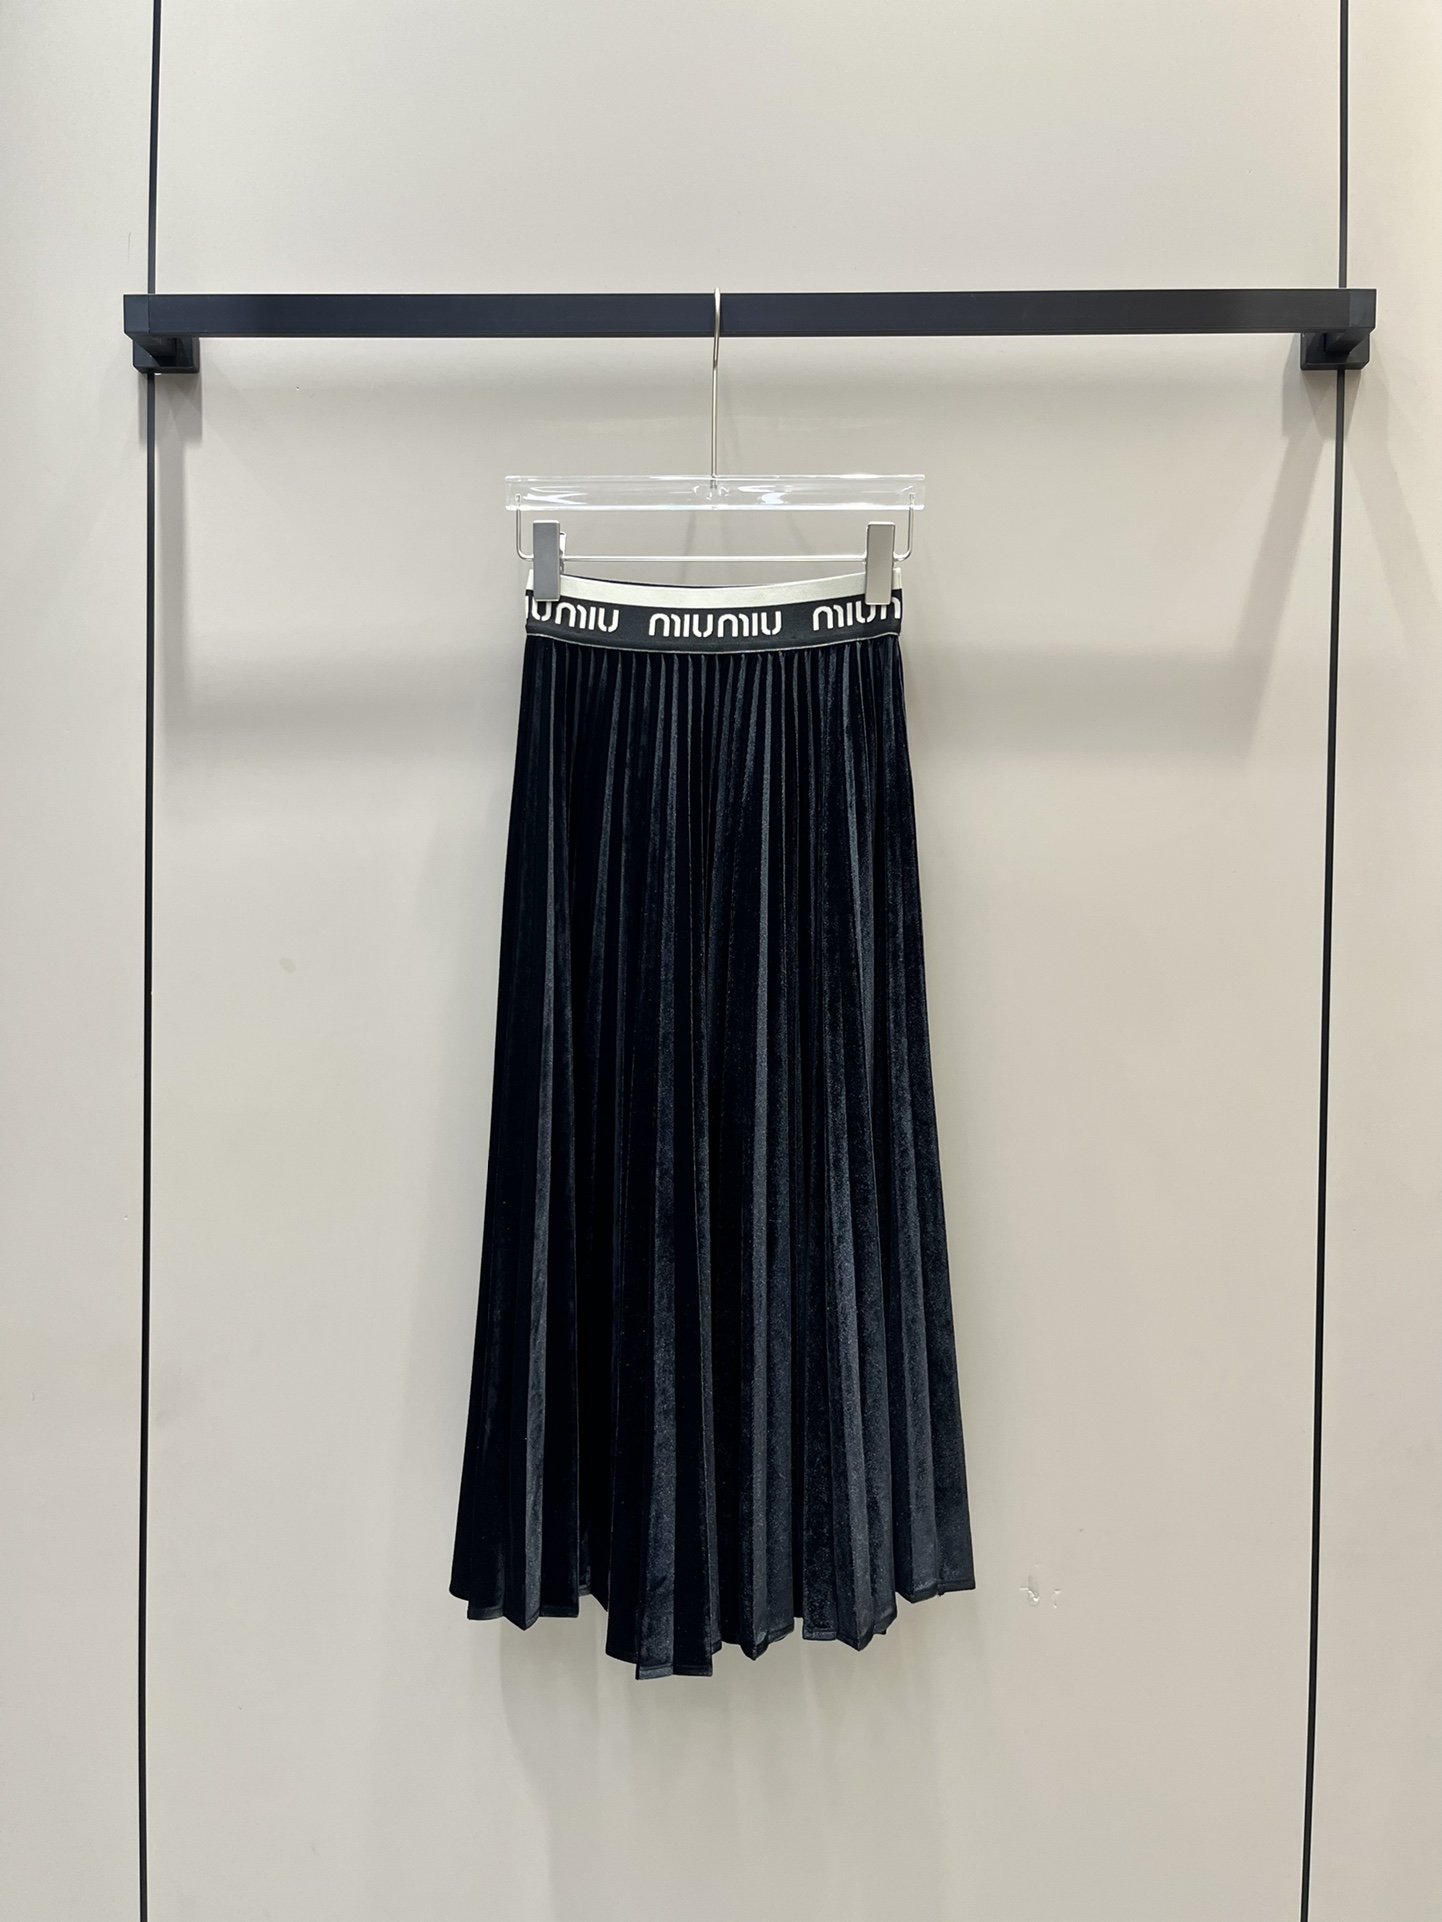 Skirt pleated velvet secondary length